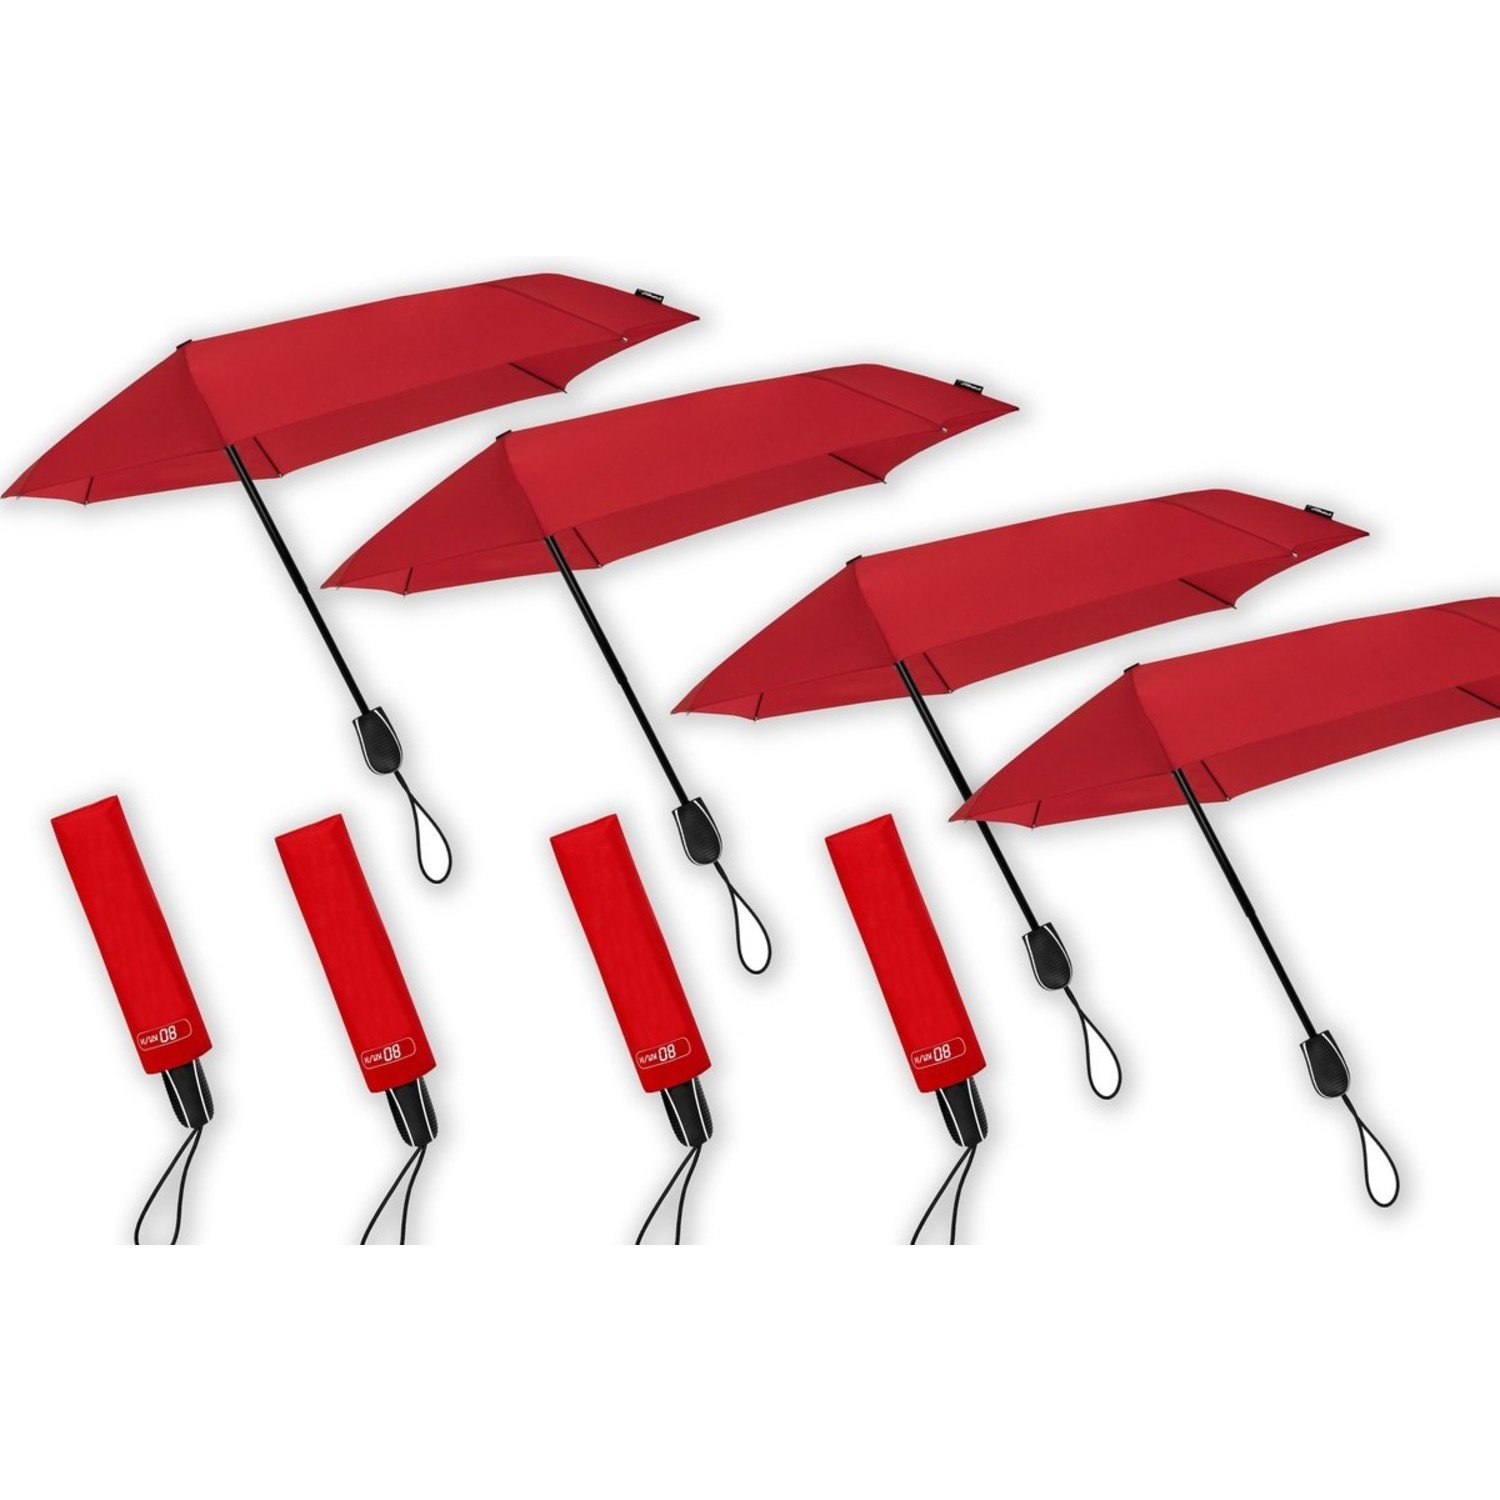 Neerduwen Adelaide bijtend Stormparaplu - Antistorm paraplu - Stormparaplu- STORM Aerodynamische  opvouwbare stormparaplu Rood - handopening - Discountershop.nl